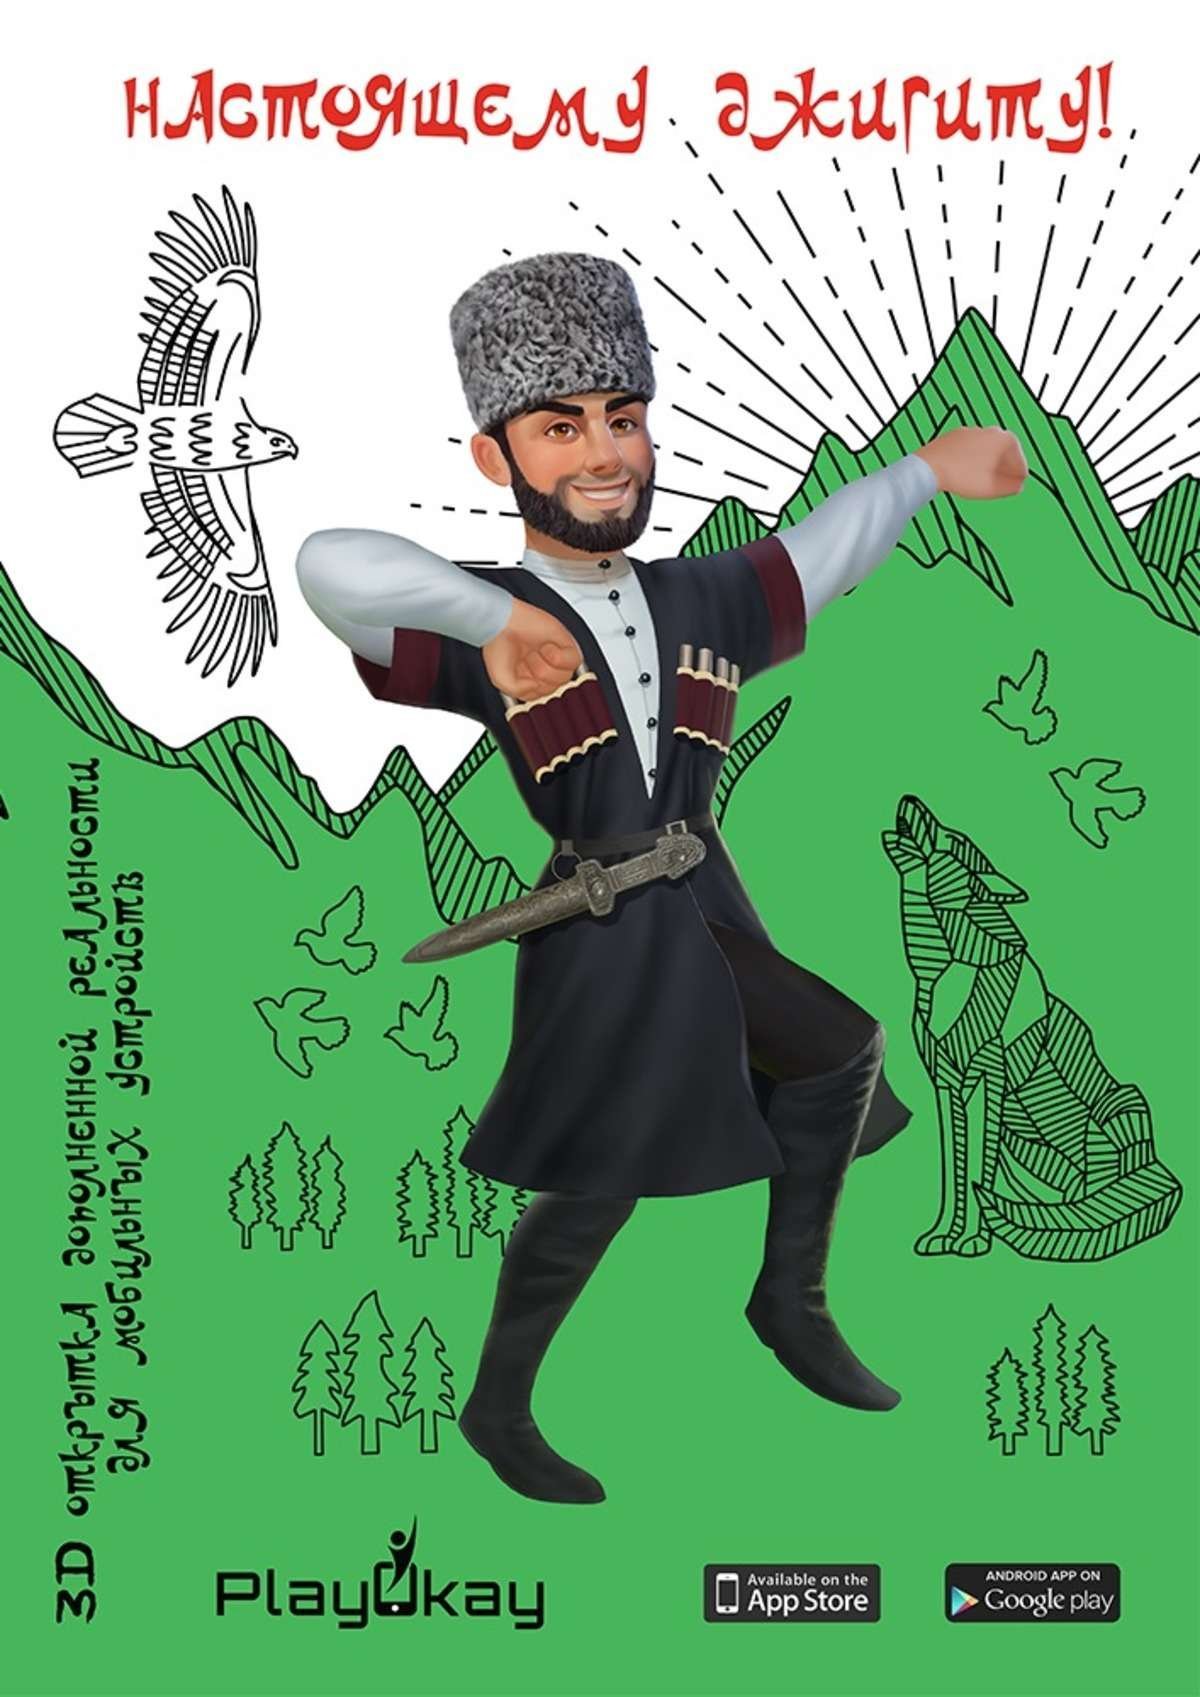 Поздравление с днем рождения на чеченском - 70 фото